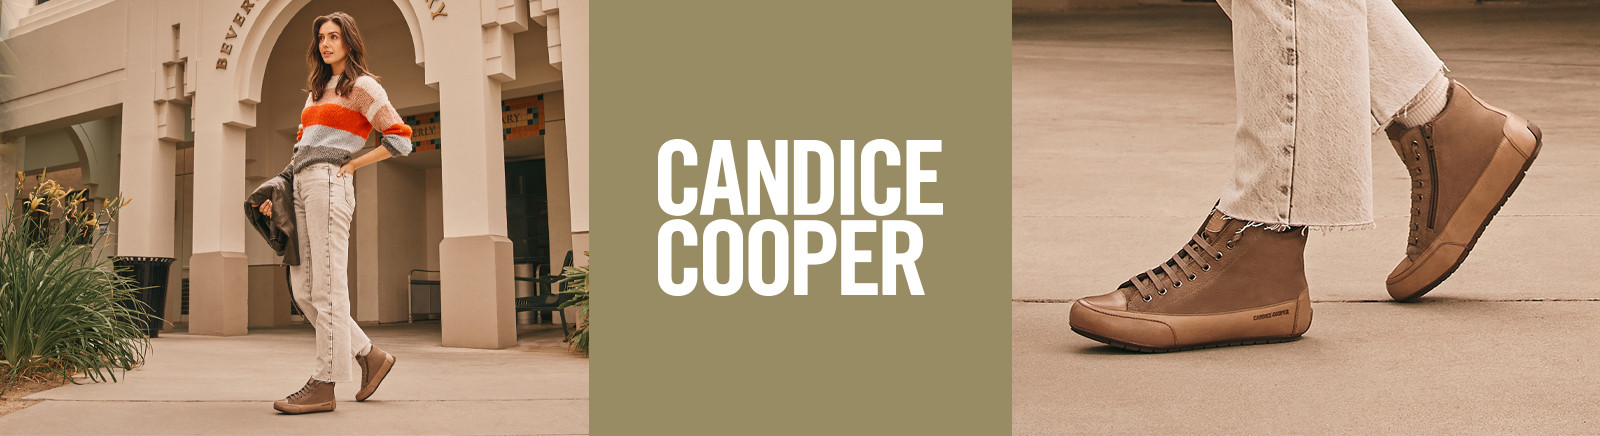 Candice Cooper Damenschuhe online bestellen im Juppen Shop